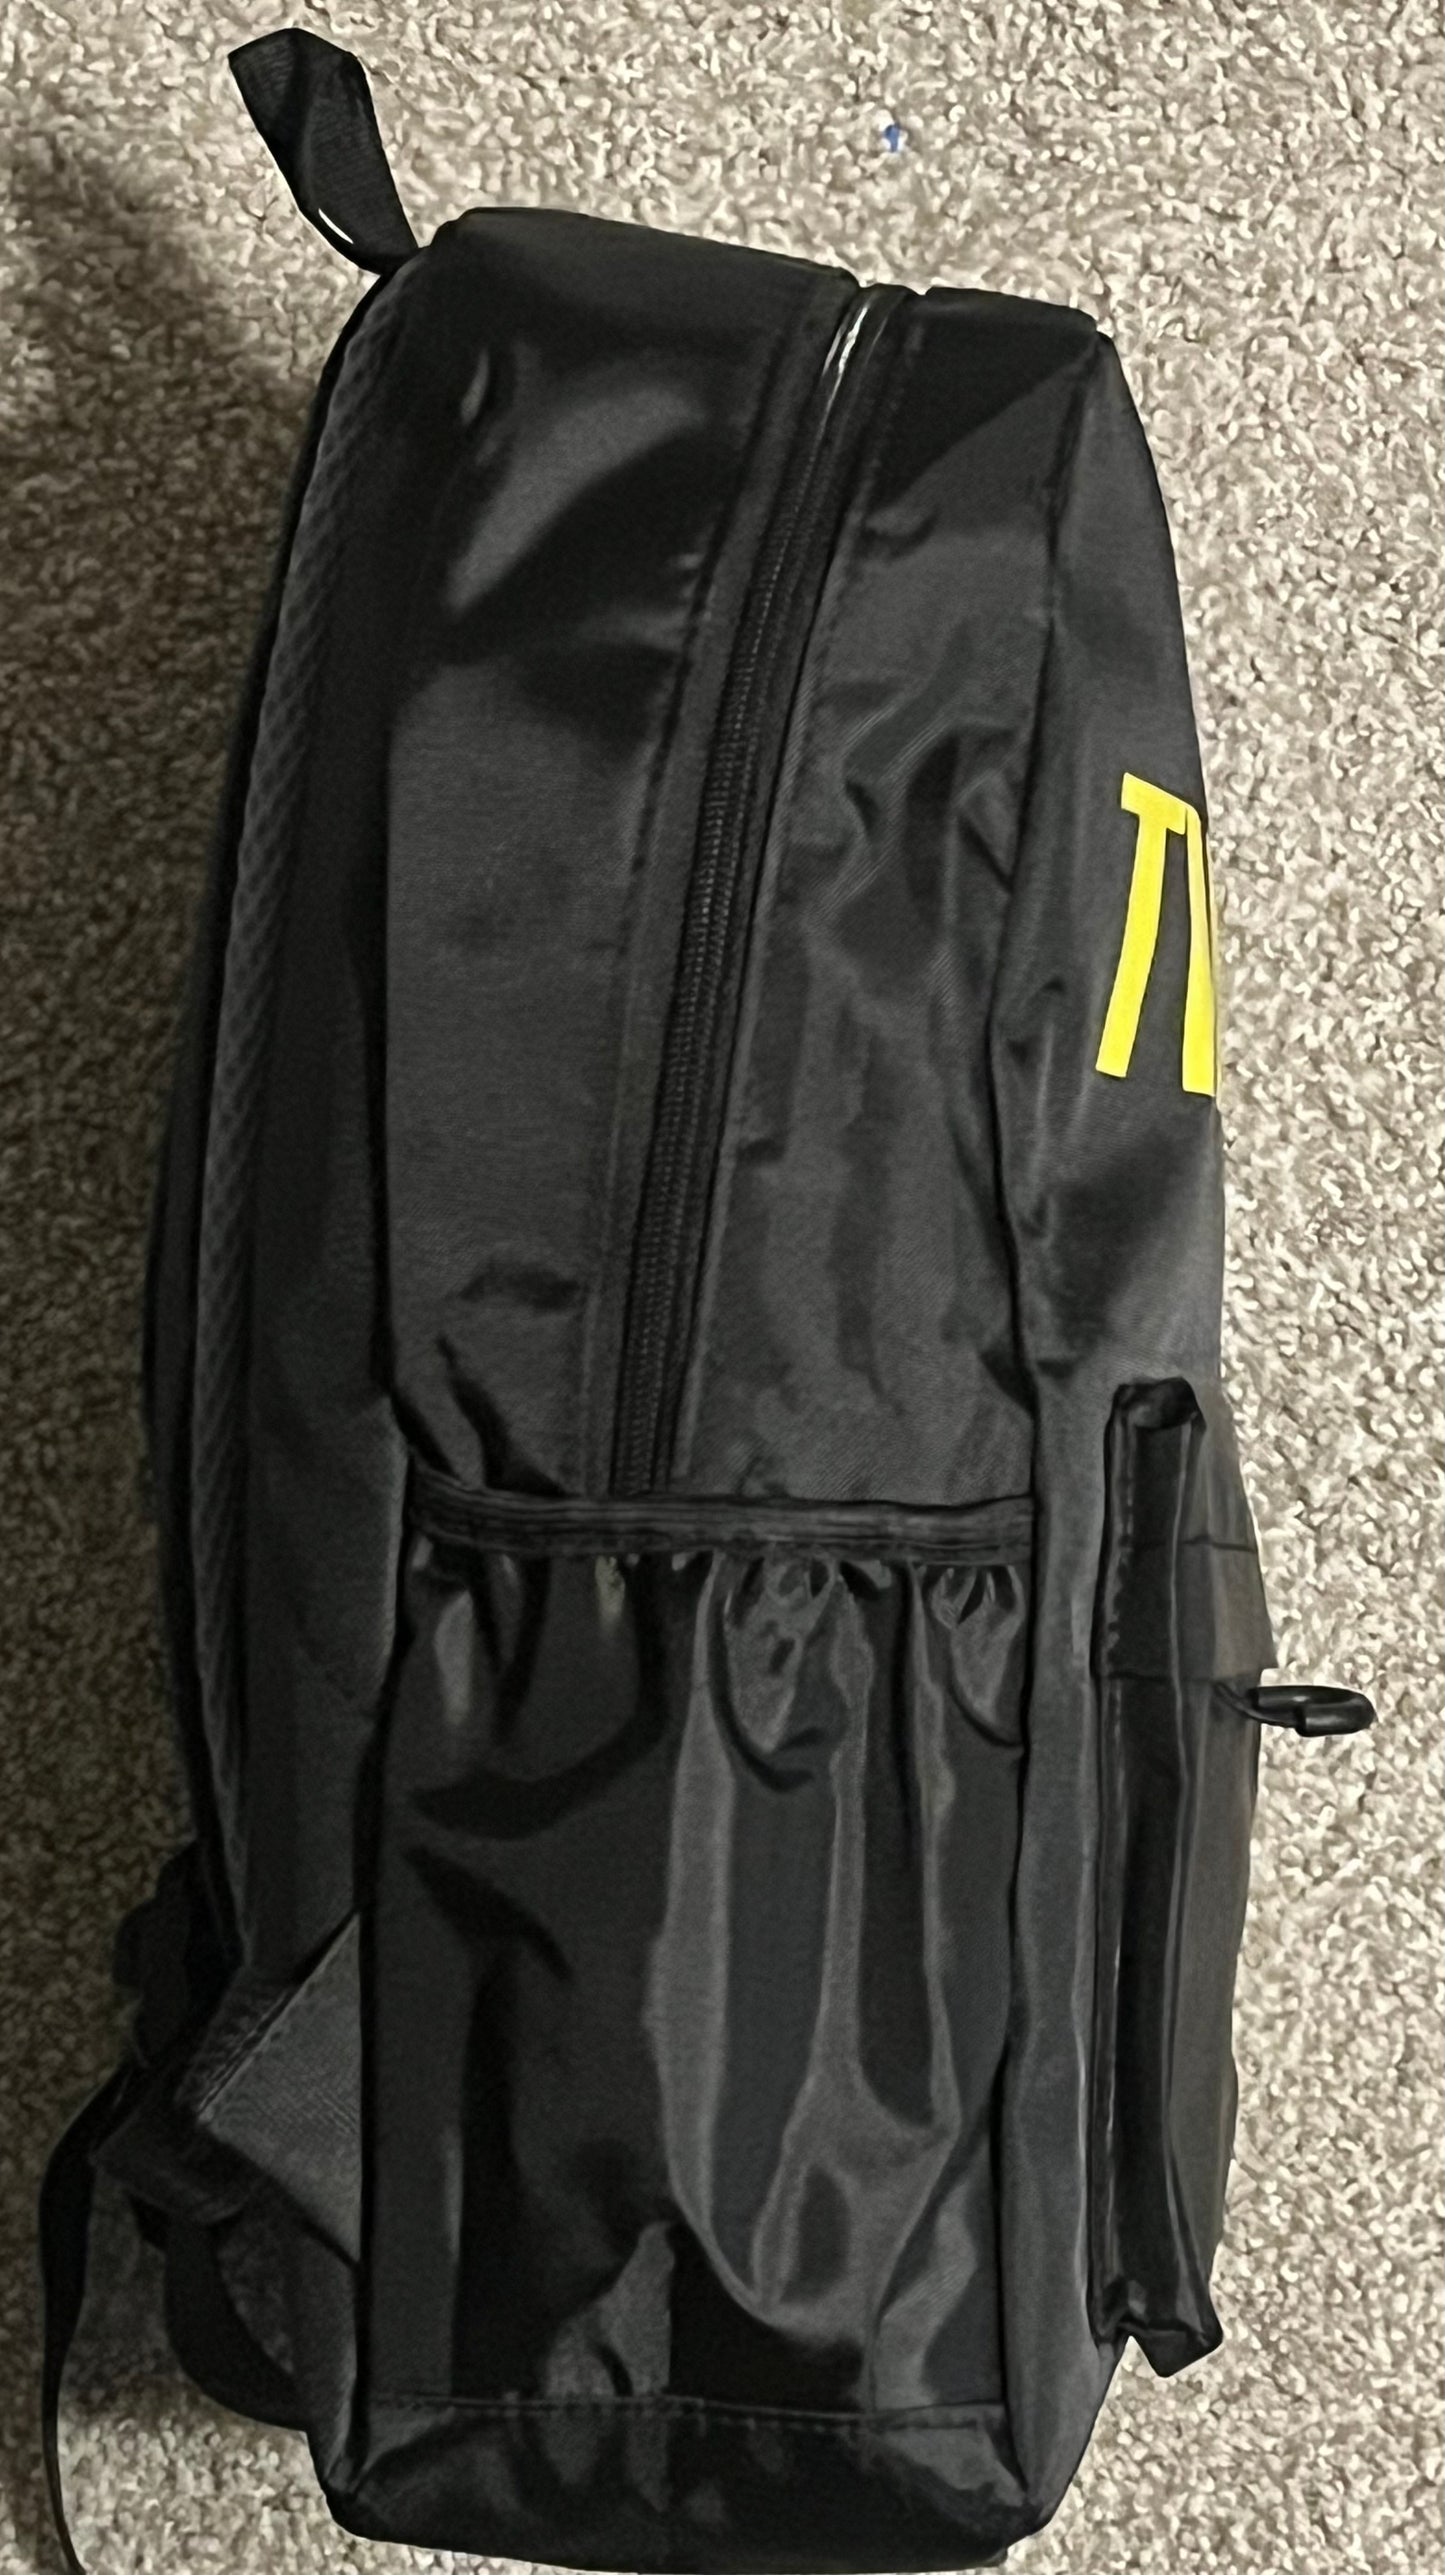 Twid Glow Backpack